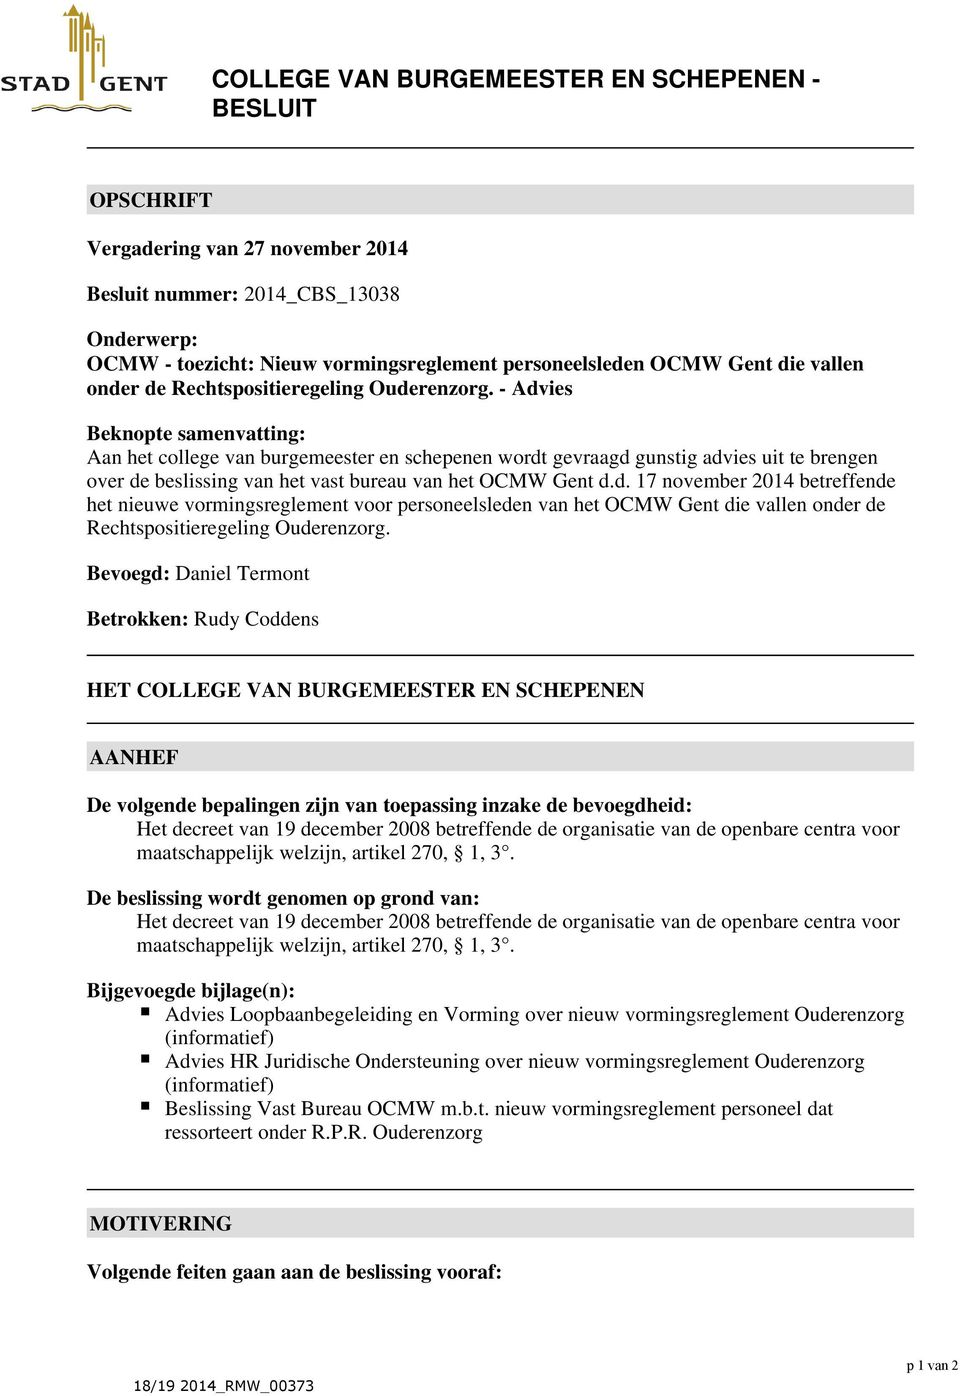 - Advies Beknopte samenvatting: Aan het college van burgemeester en schepenen wordt gevraagd gunstig advies uit te brengen over de beslissing van het vast bureau van het OCMW Gent d.d. 17 november